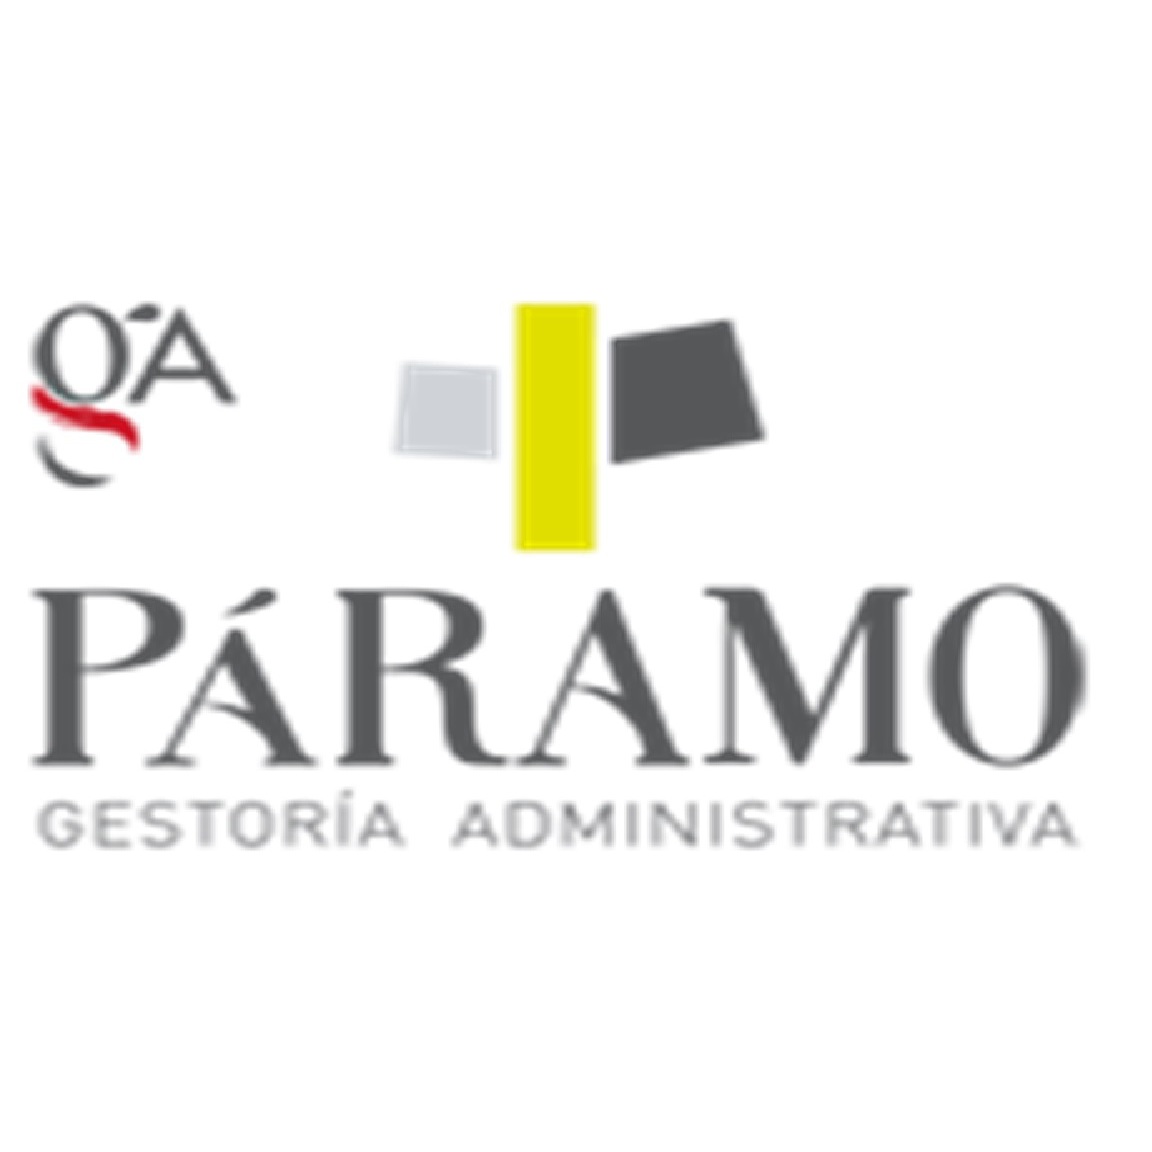 Gestoria Paramo Logo